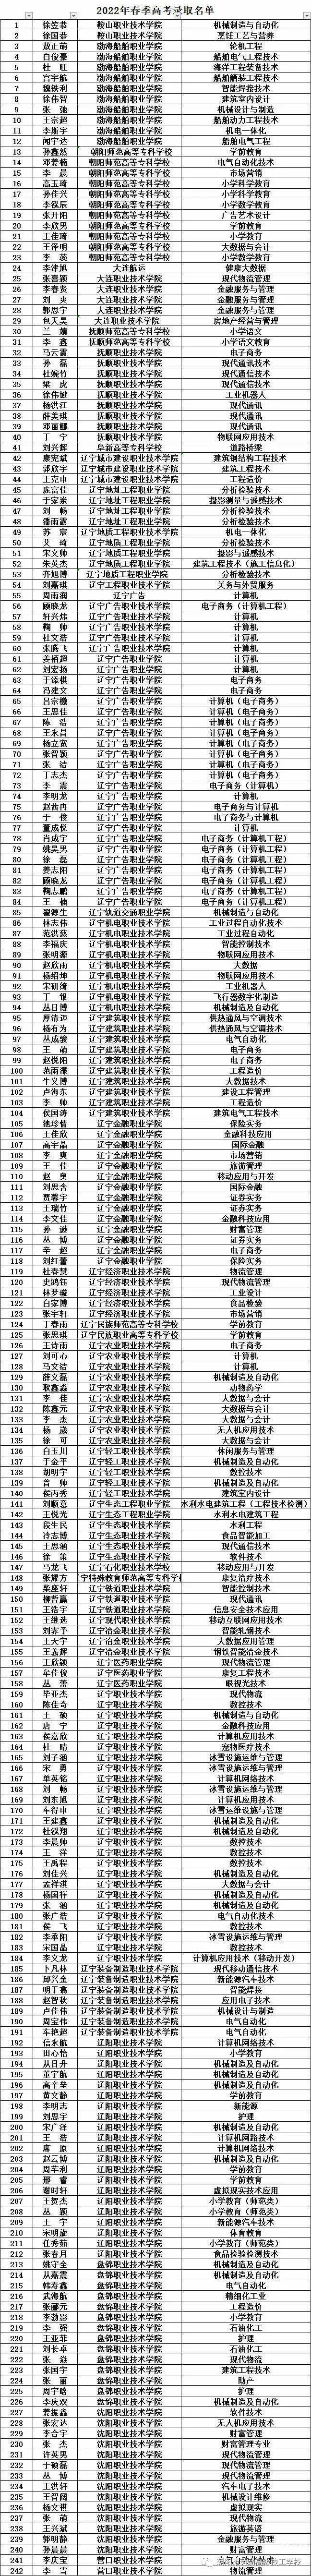 朝阳市劳动高级技工学校--19级高考提前批单招考试升学光荣榜(图10)